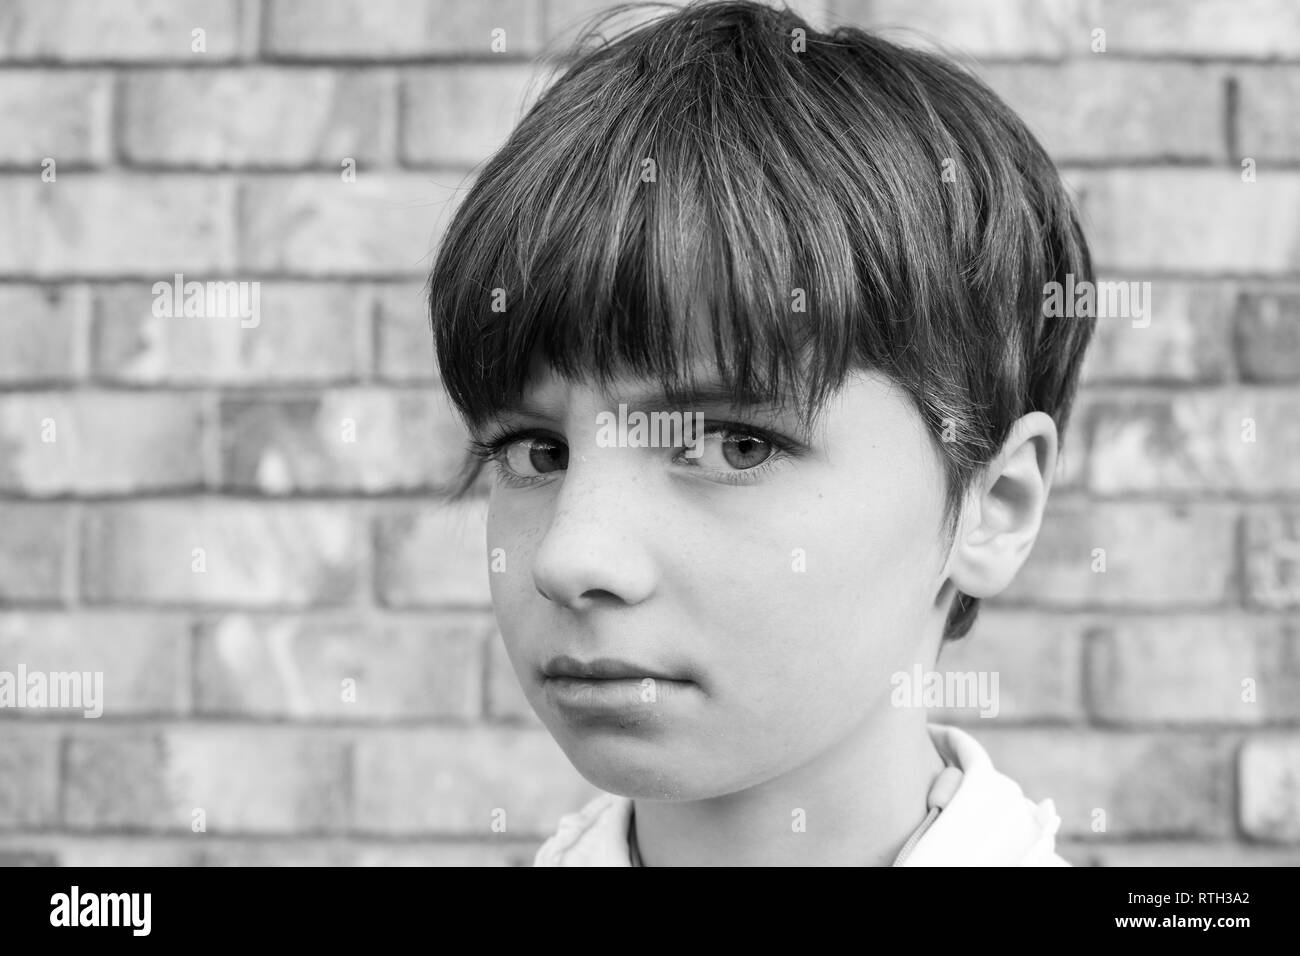 Portrait noir et blanc d'un enfant aux cheveux courts avec de grands yeux et un regard en colère Banque D'Images